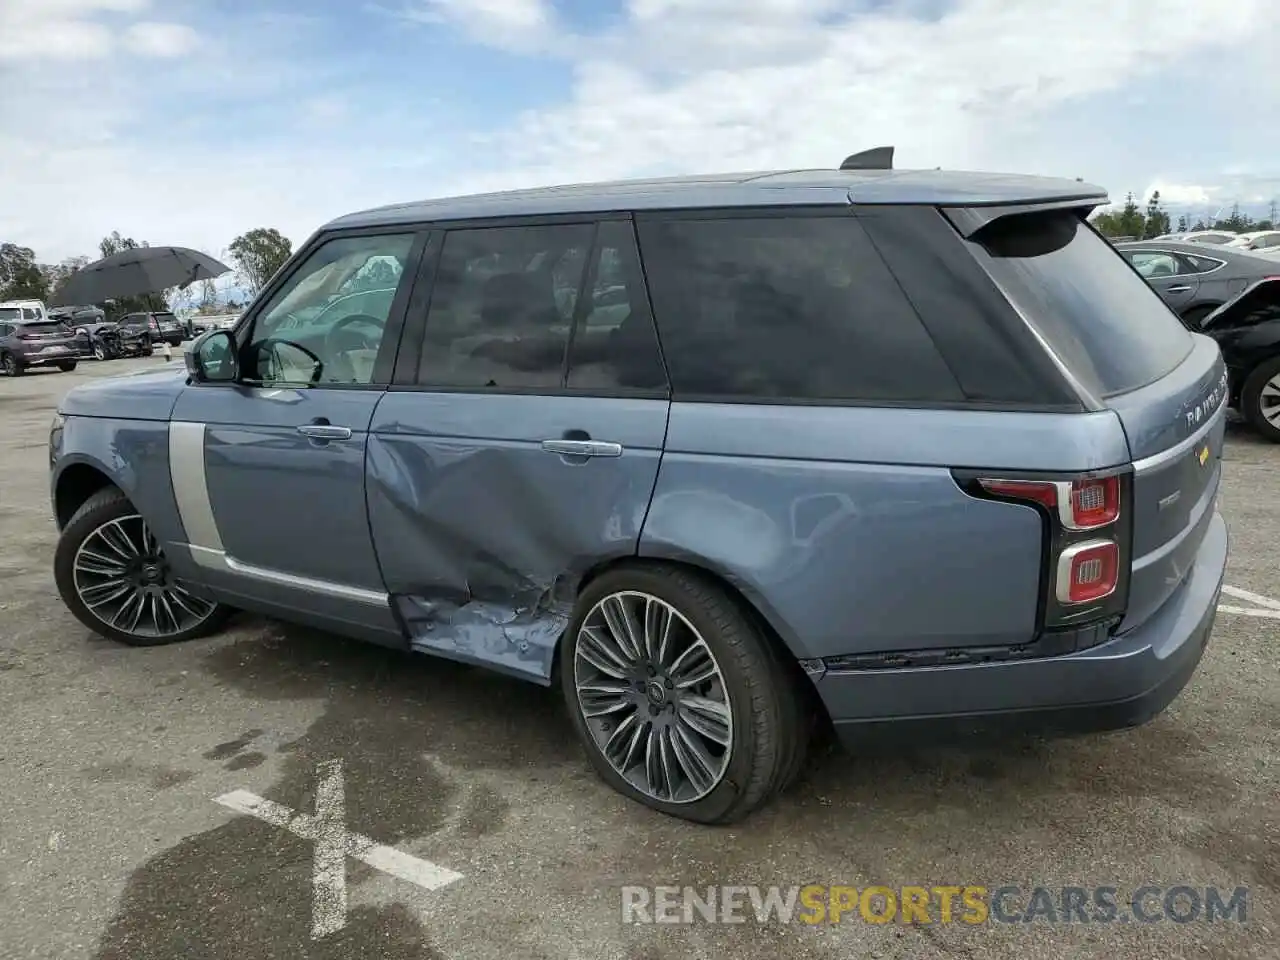 2 Photograph of a damaged car SALGV2REXKA541430 LAND ROVER RANGEROVER 2019